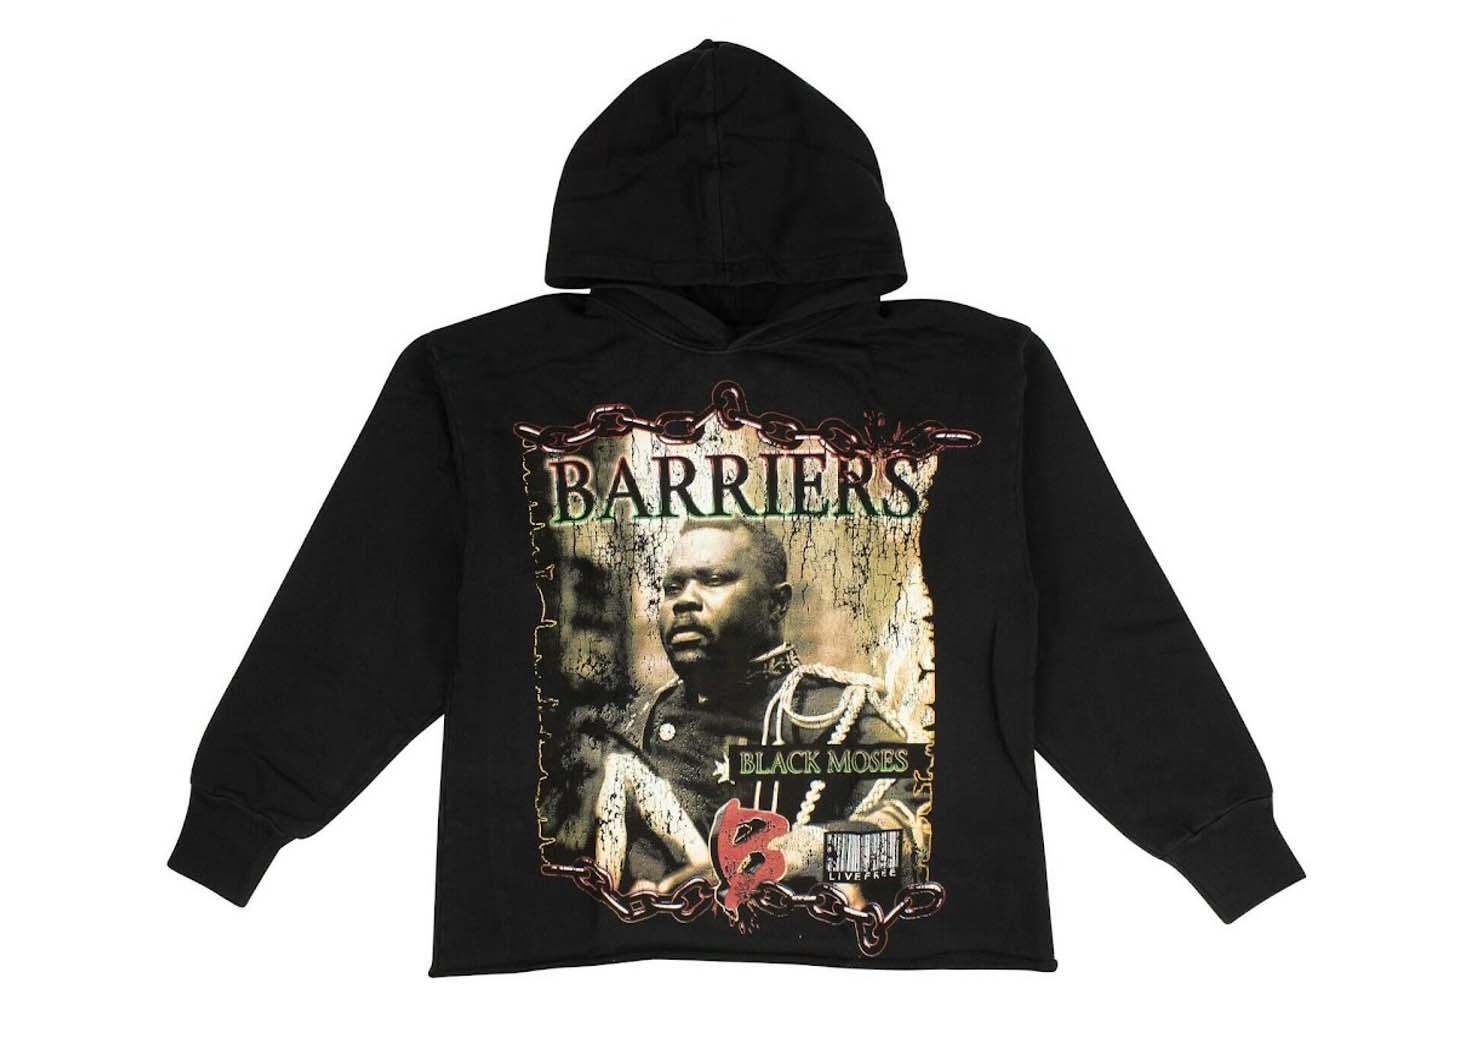 Barriers Marcus Garvey Hoodie Black Men's - US